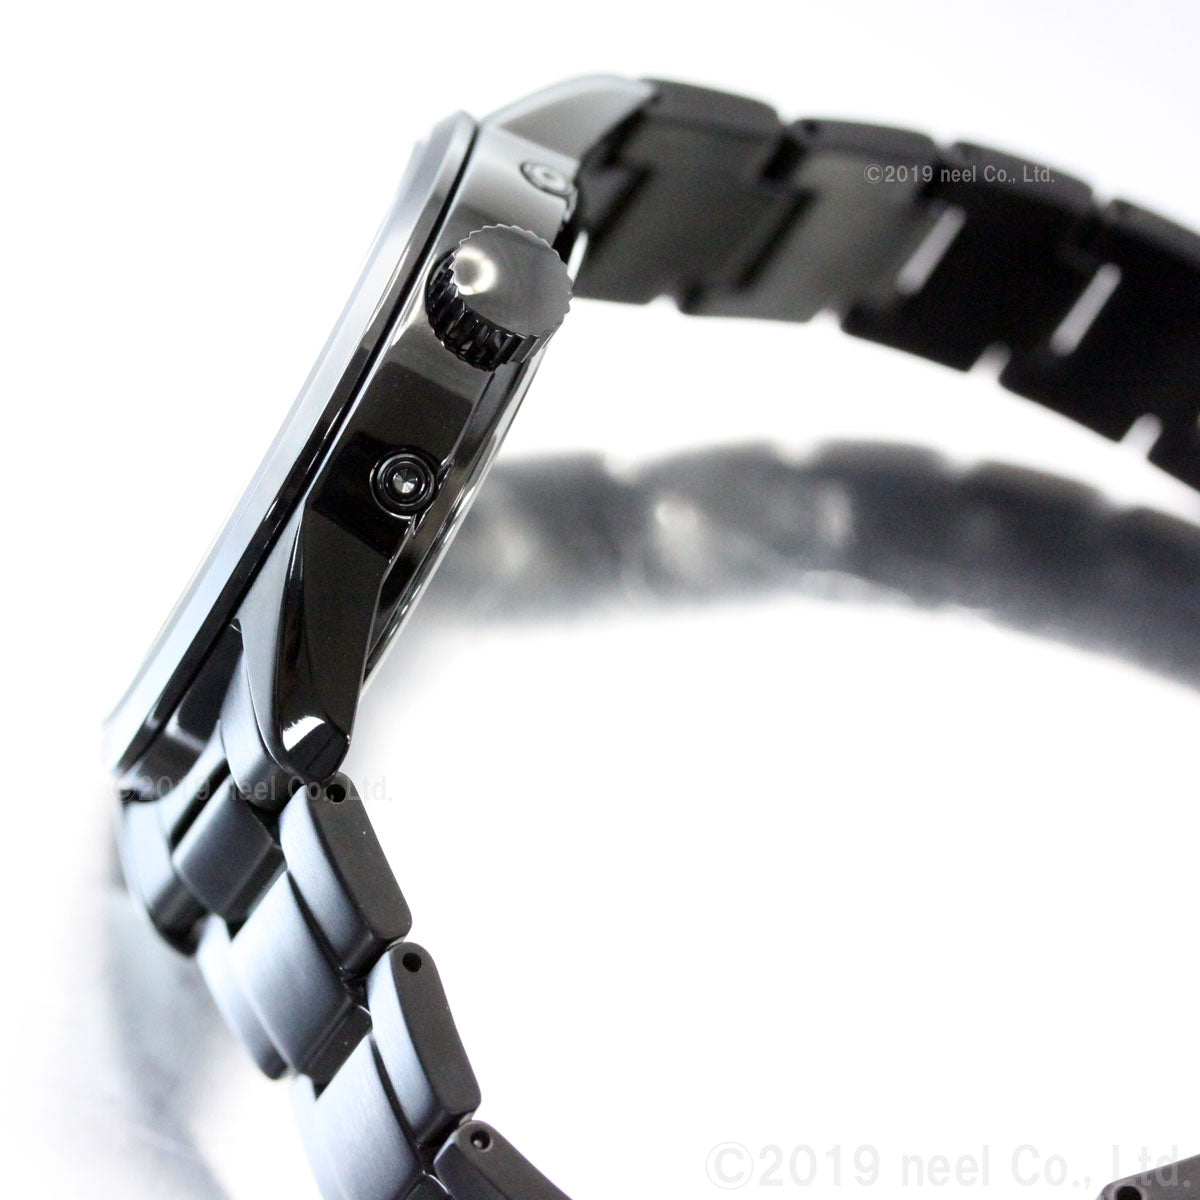 セイコー セレクション SEIKO SELECTION 電波 ソーラー ネット流通限定モデル 腕時計 メンズ SBTM277